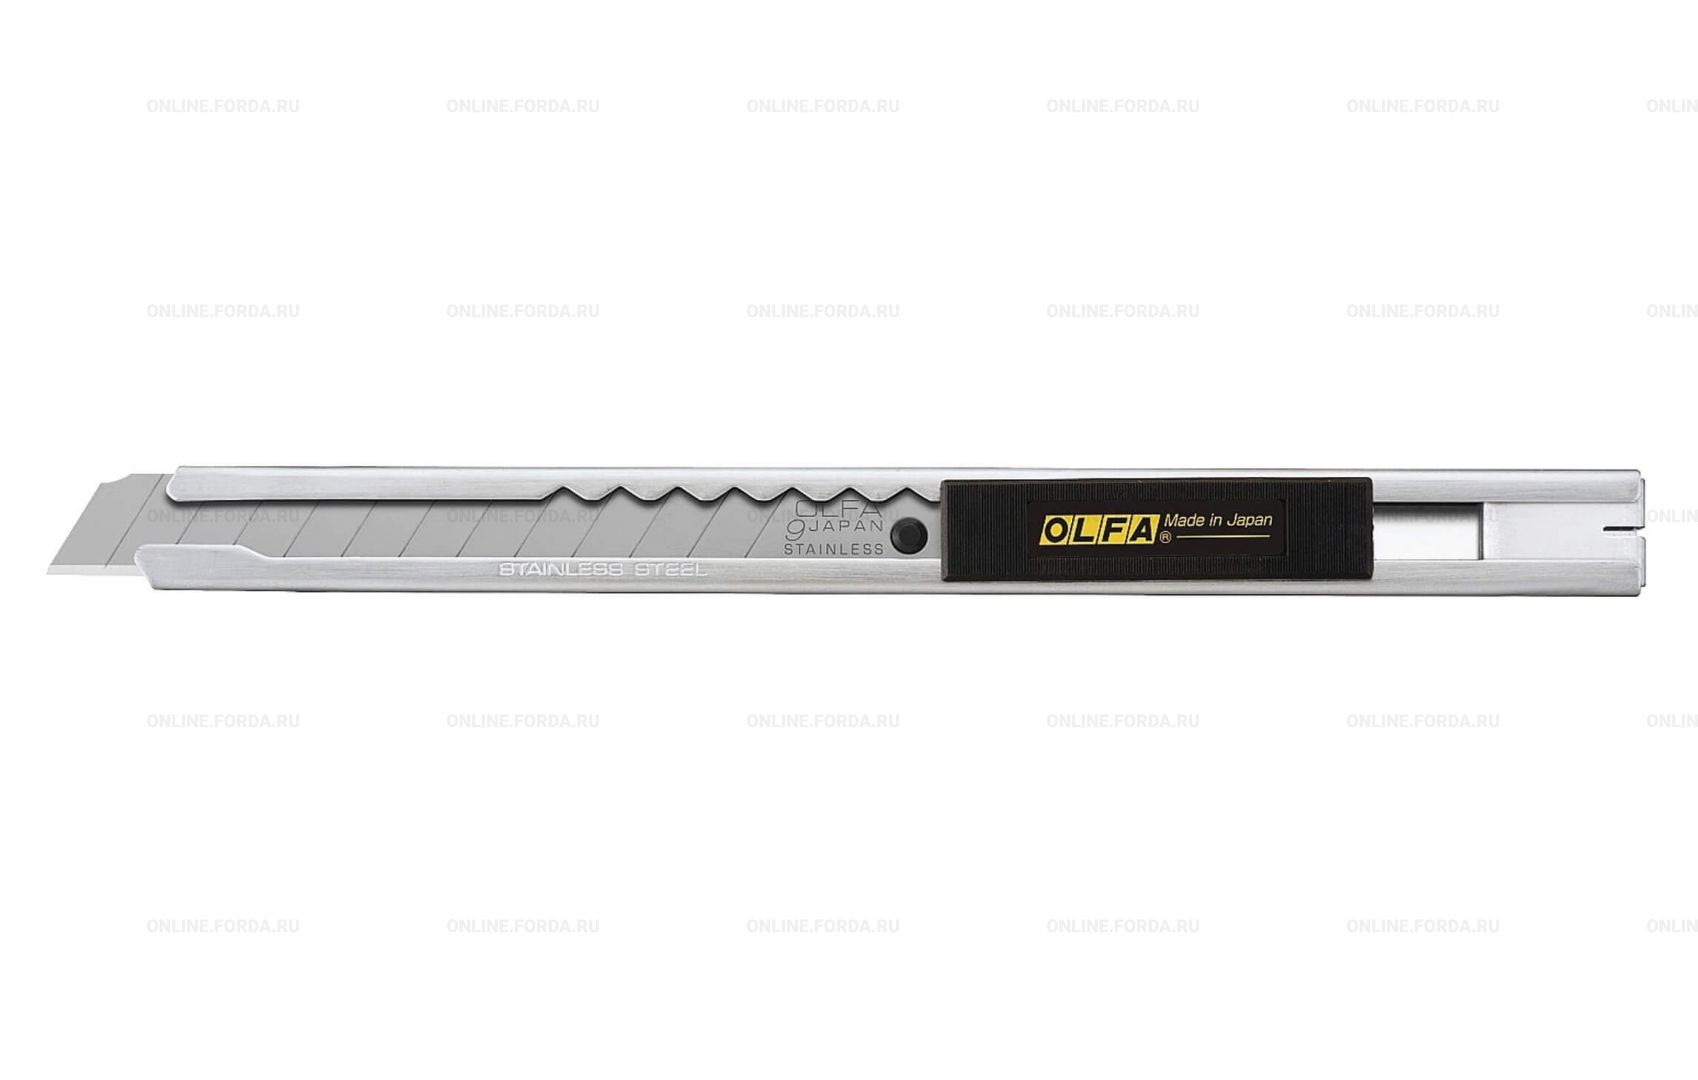 OL-SVR-1 Нож OLFA c выдвижным лезвием и корпусом из нержавеющей стали, 9мм